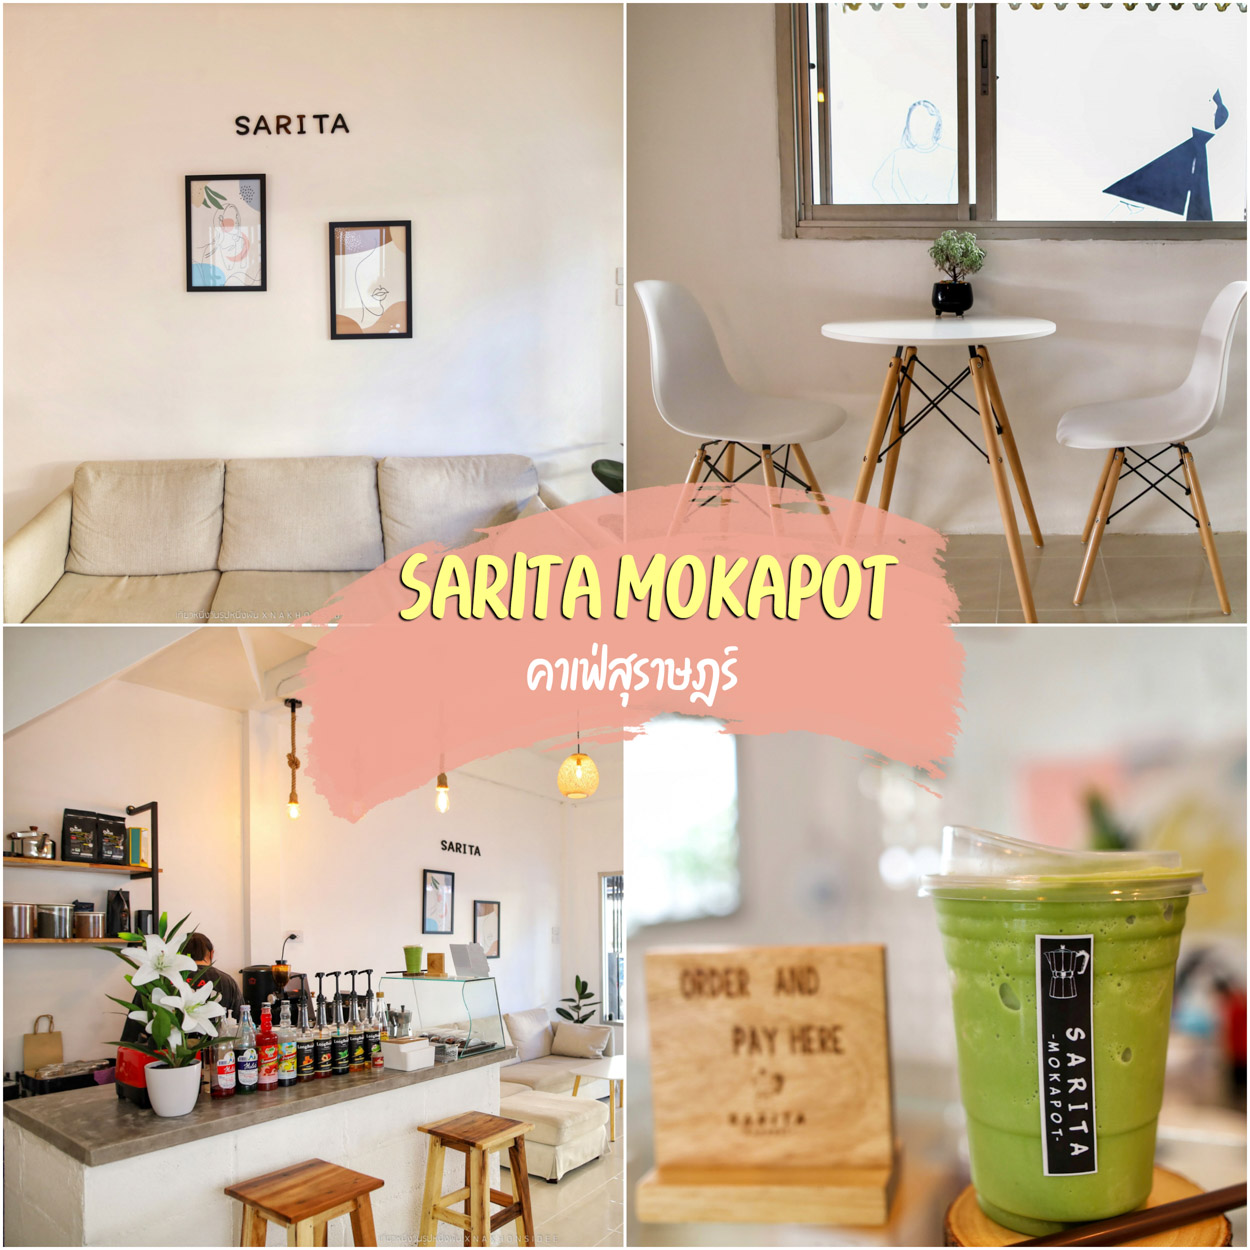 SARITA MOKAPOT คาเฟ่สุราษฎร์ธานี  มีเมนูเครื่องดื่มทั้งชาและกาแฟ รวมถึงอาหารตามสั่งอีกเล็กน้อย